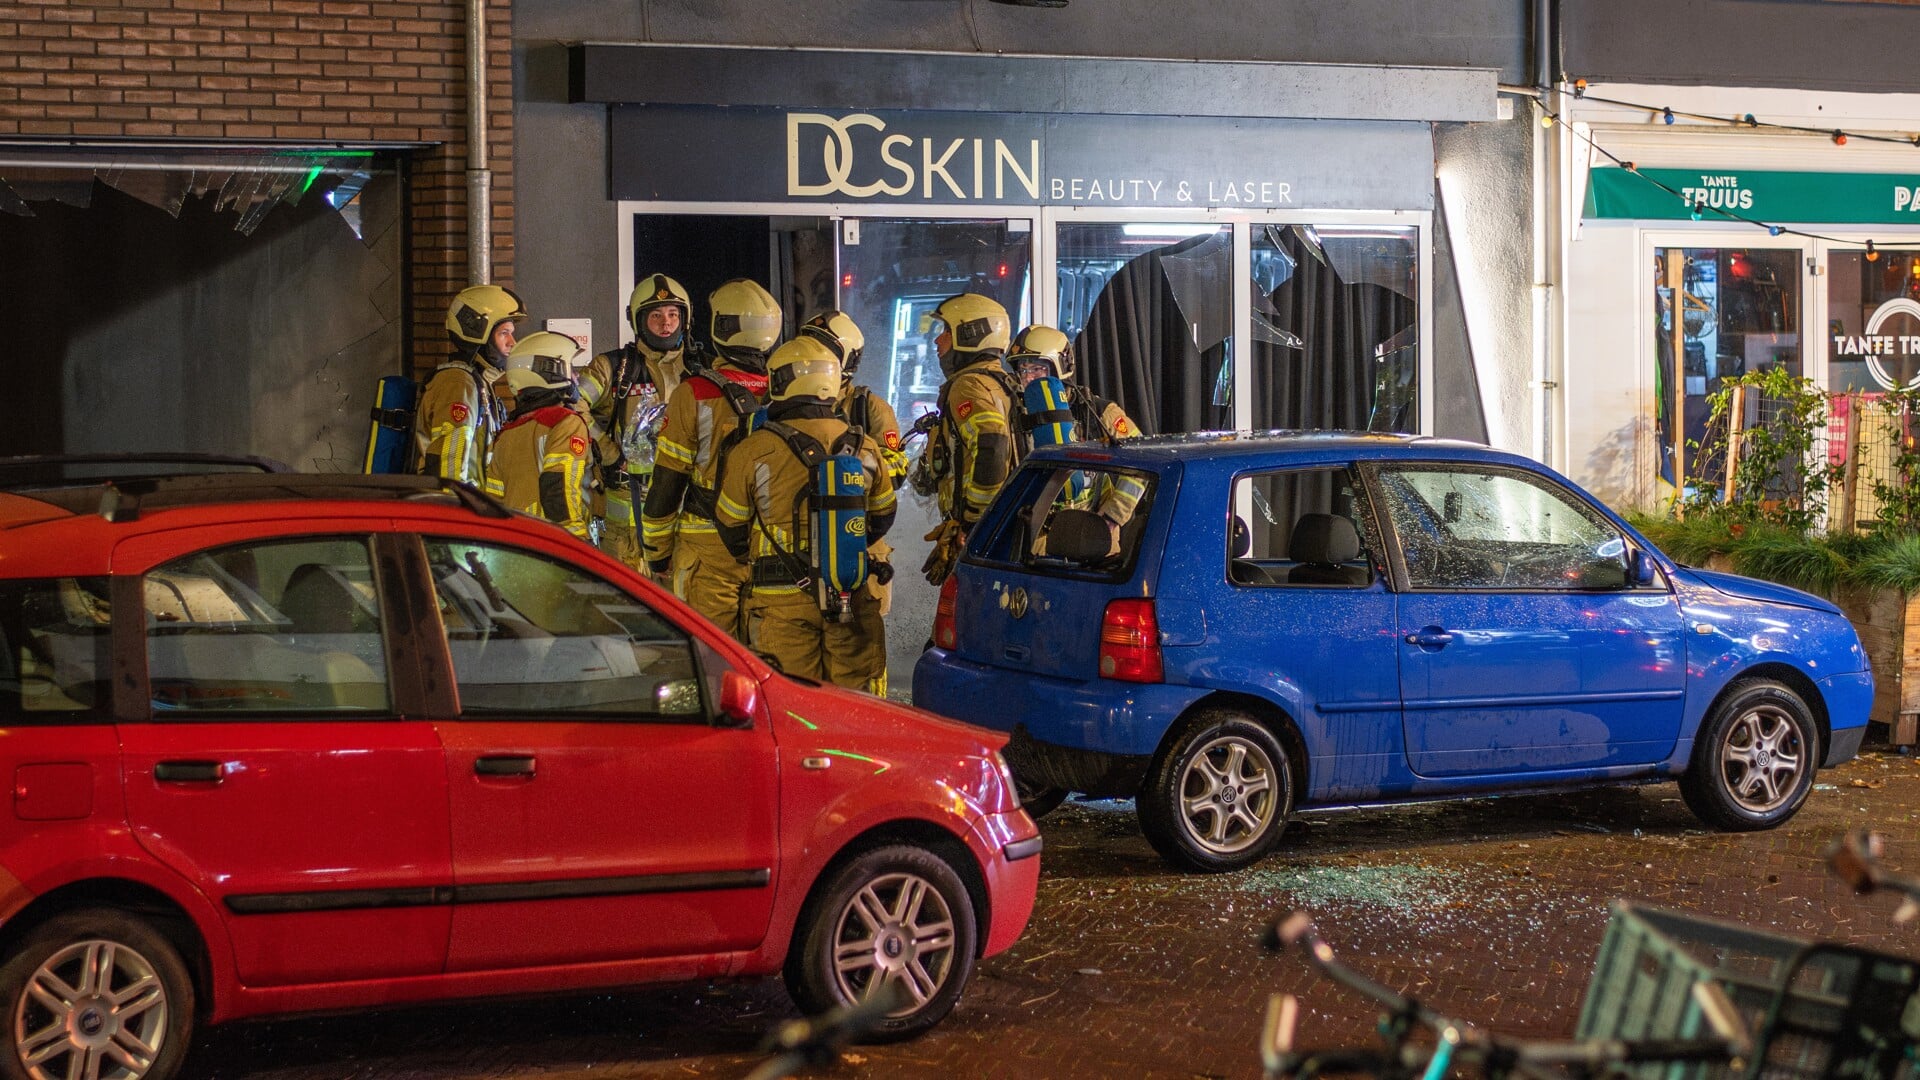 • De explosie blies de ramen uit de pui van de beautysalon. Ook de auto en het naastgelegen pand raakten beschadigd. 